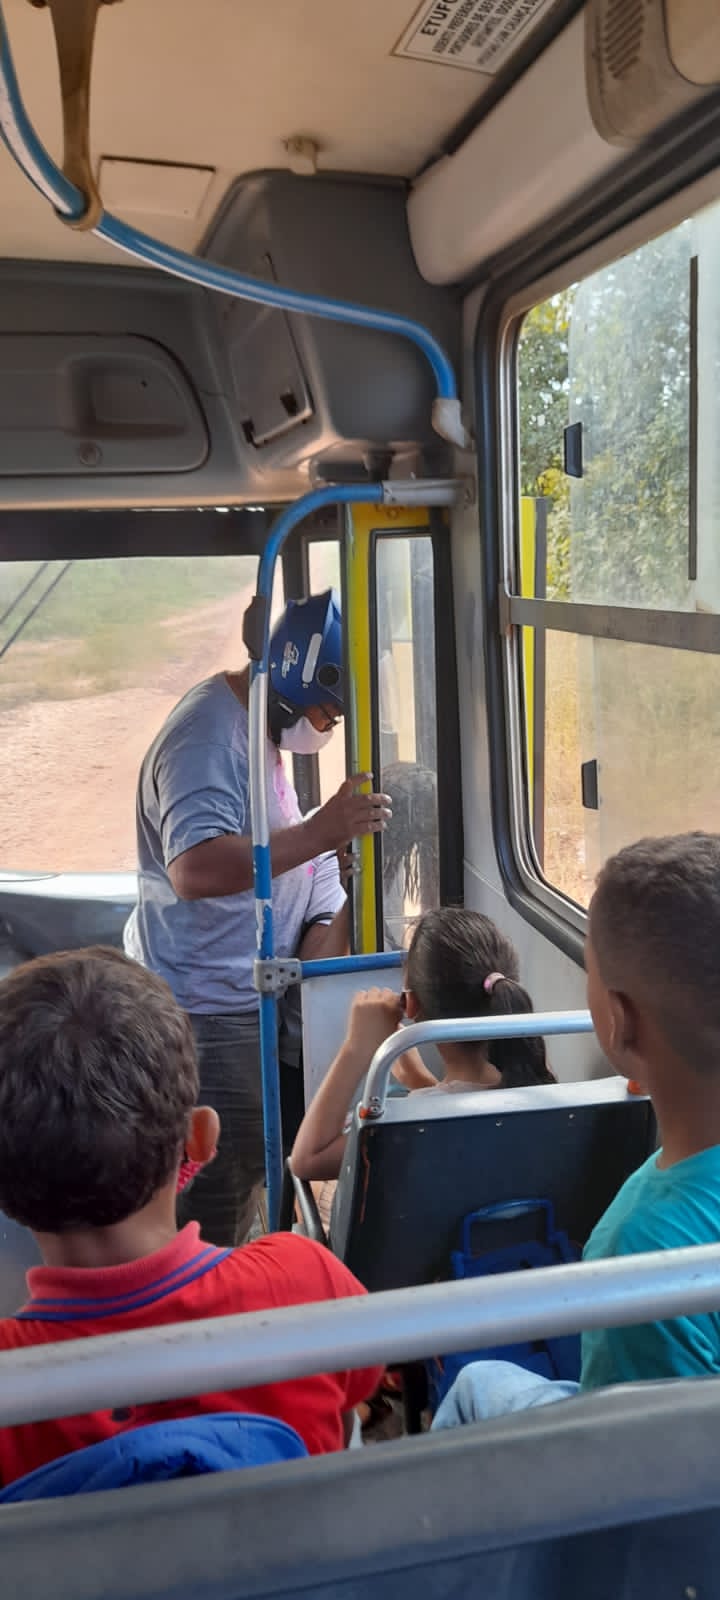 Homem invadiu ônibus escolar que transportava crianças e atacou a ex-mulher em Nazária - Foto: Reprodução/Whatsapp